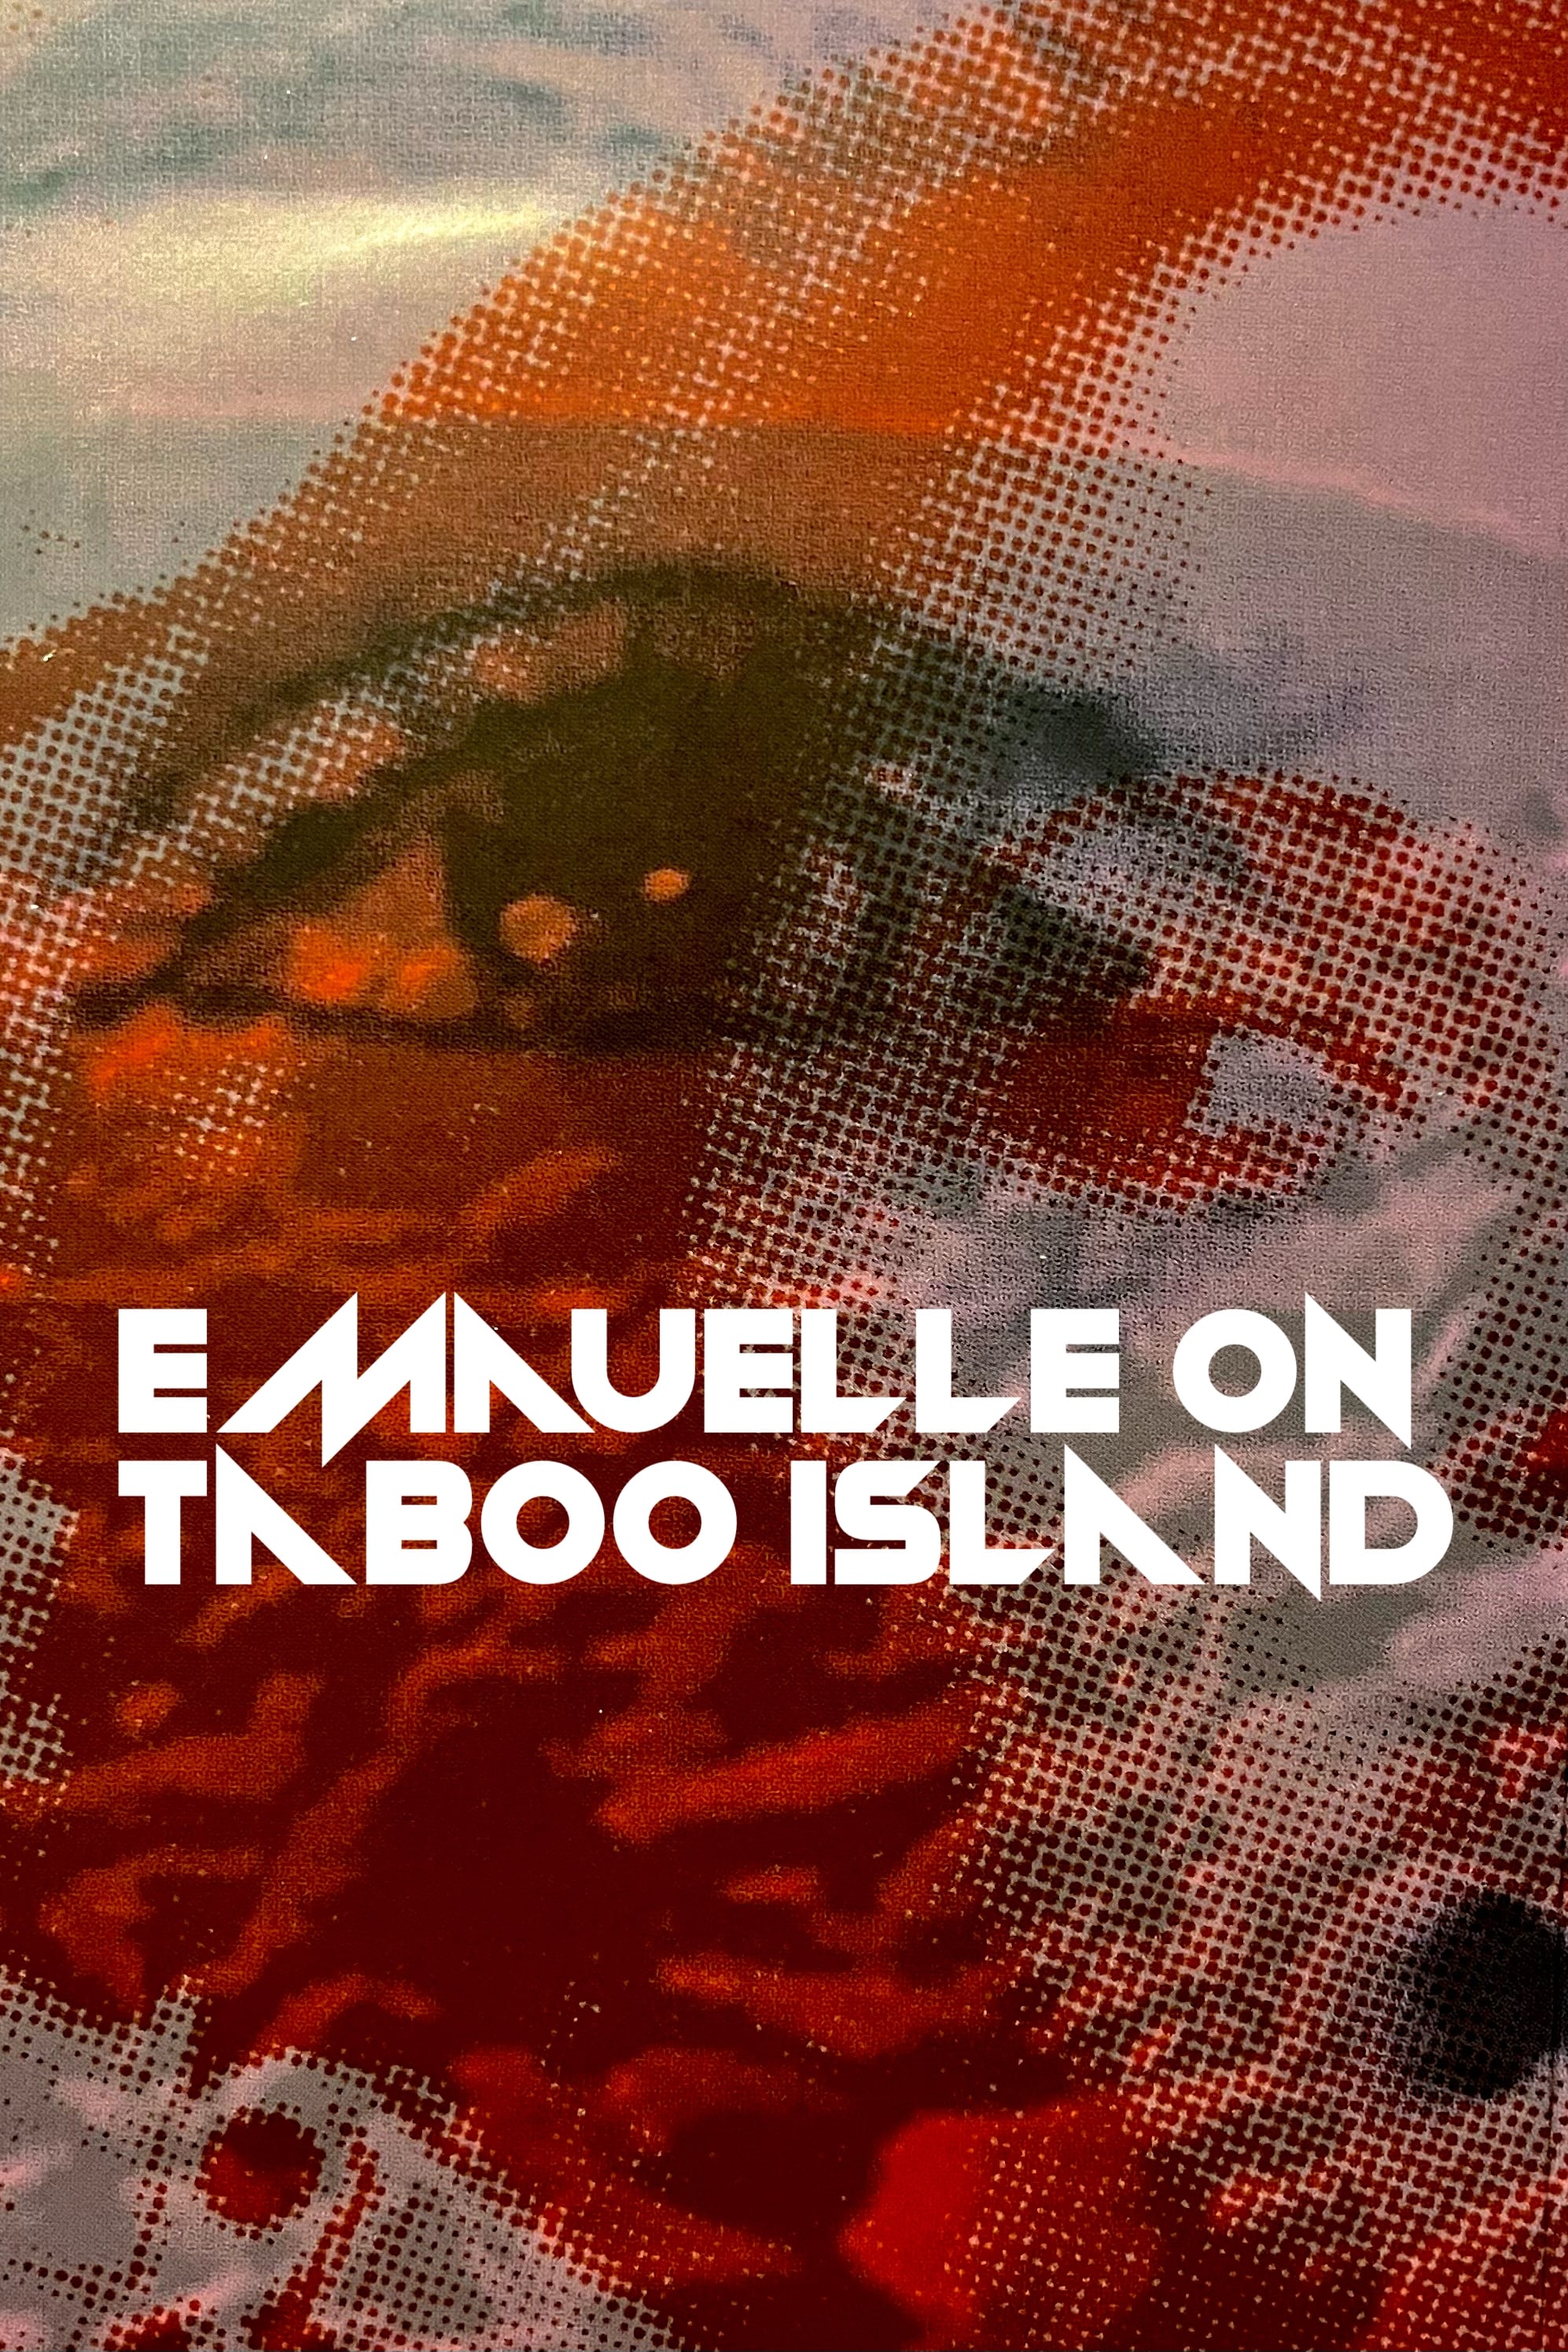 Emmanuelle on Taboo Island